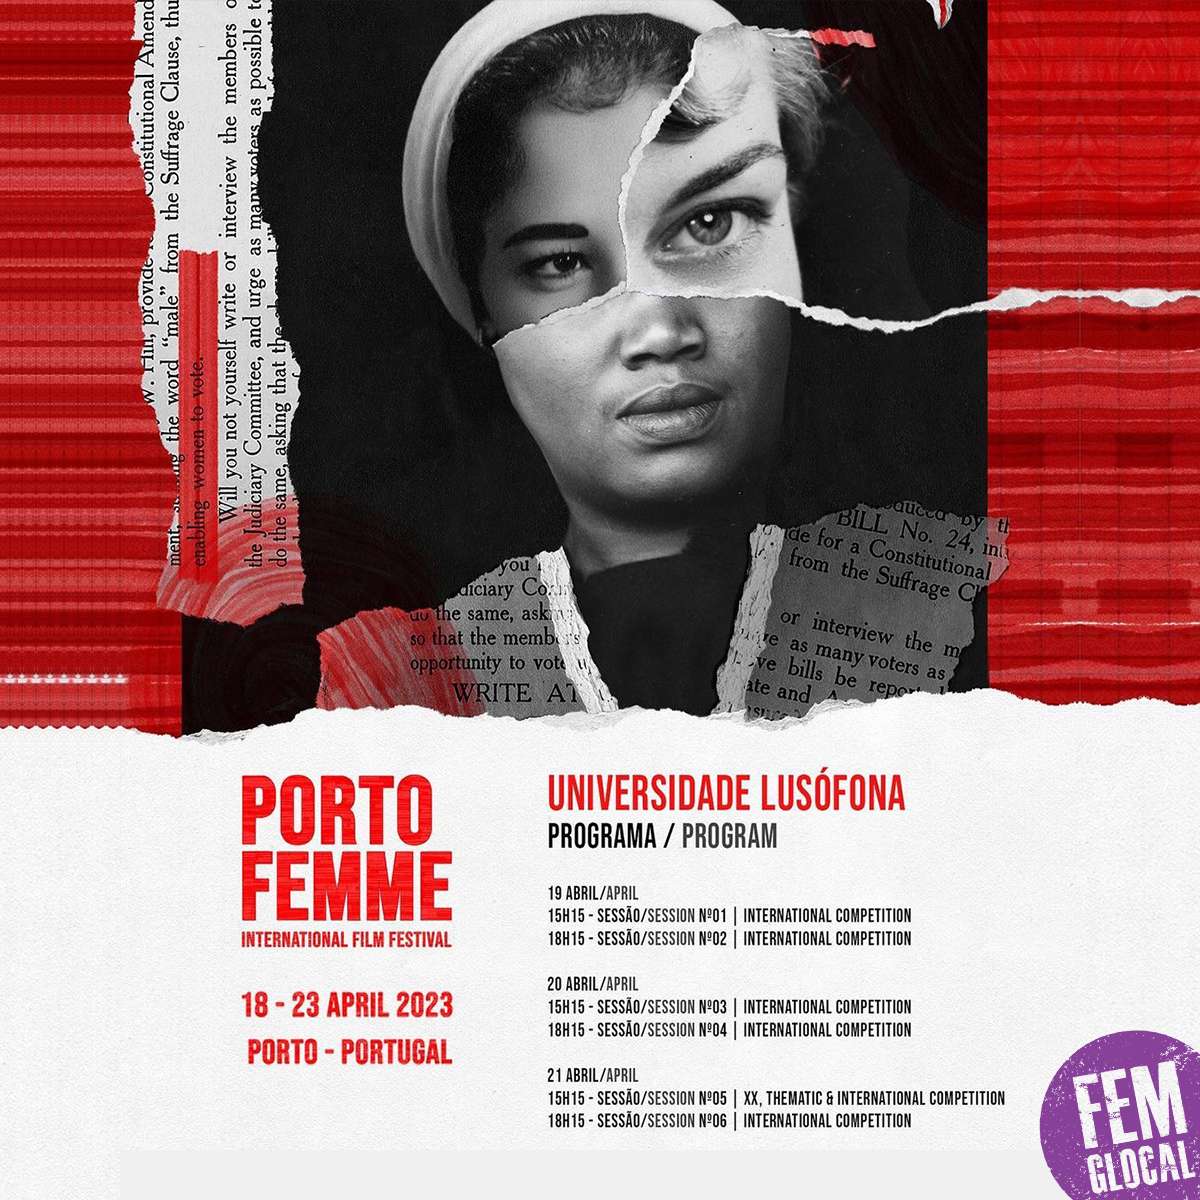 Conversas na Universidade Porto Femme – International Film Festival: 6ª Edição